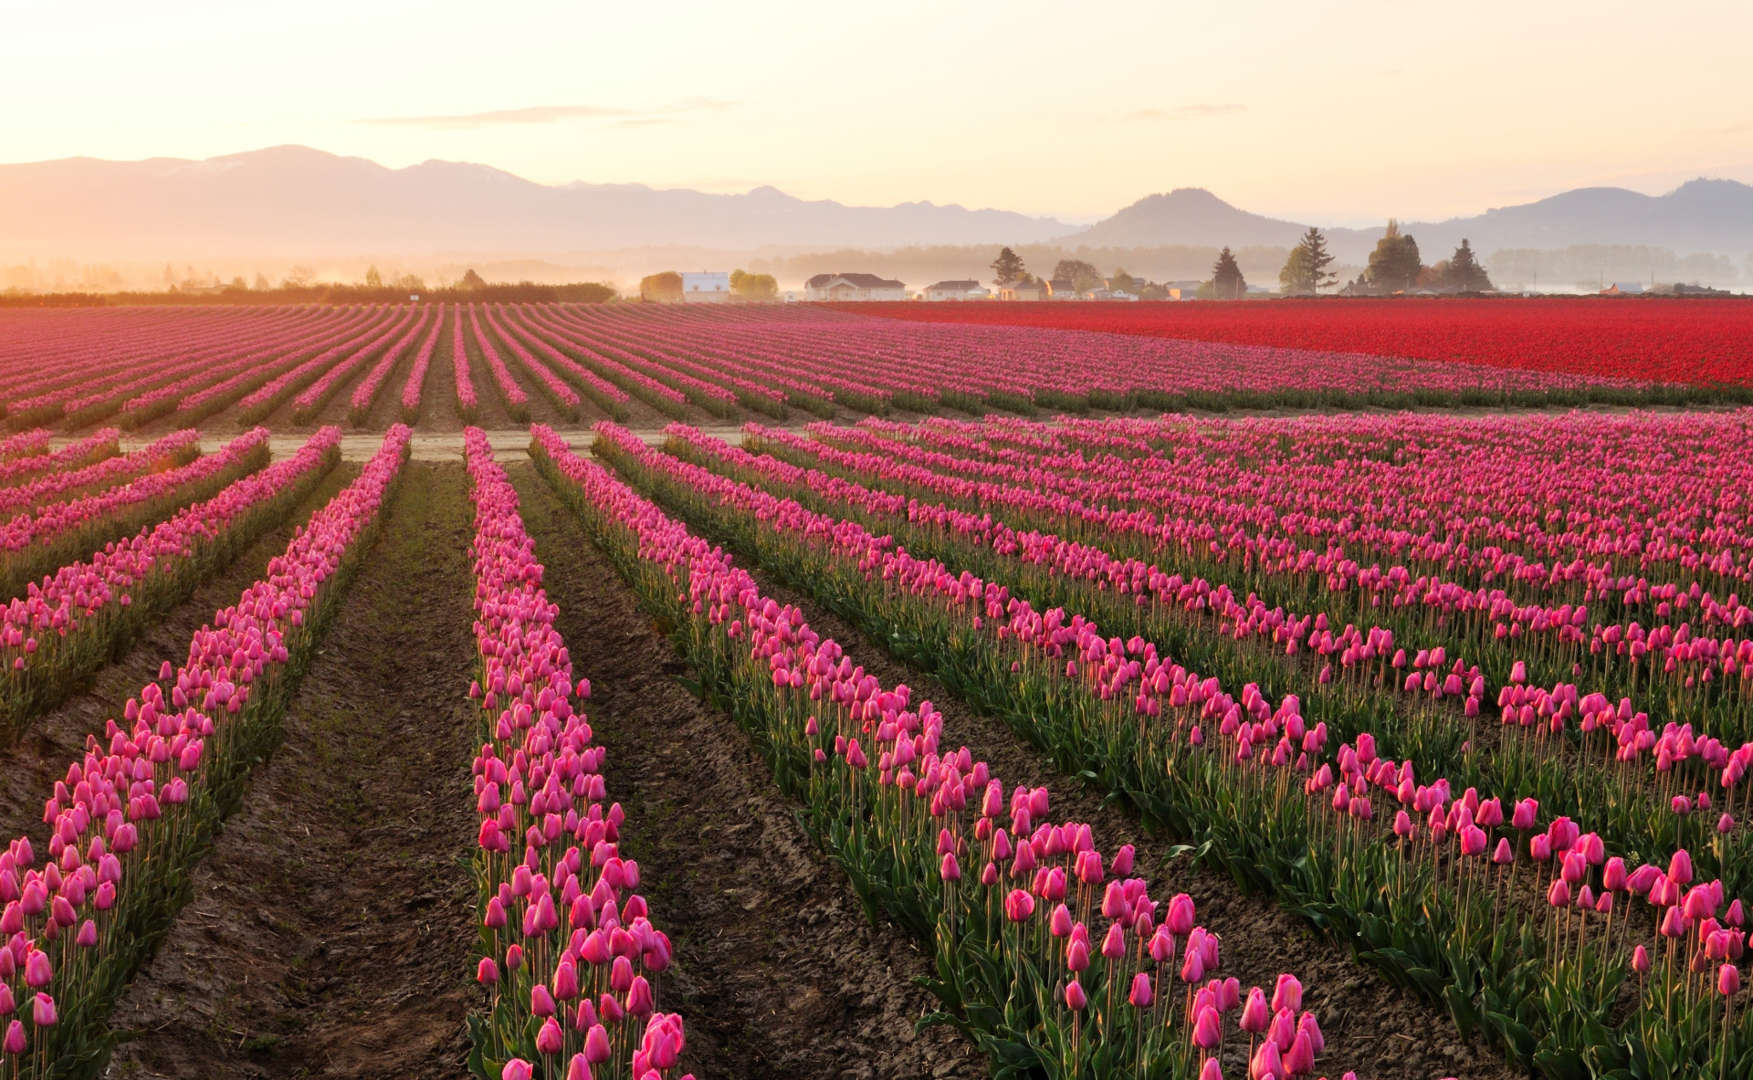 Skagit Valley Tulip Fields, Washington